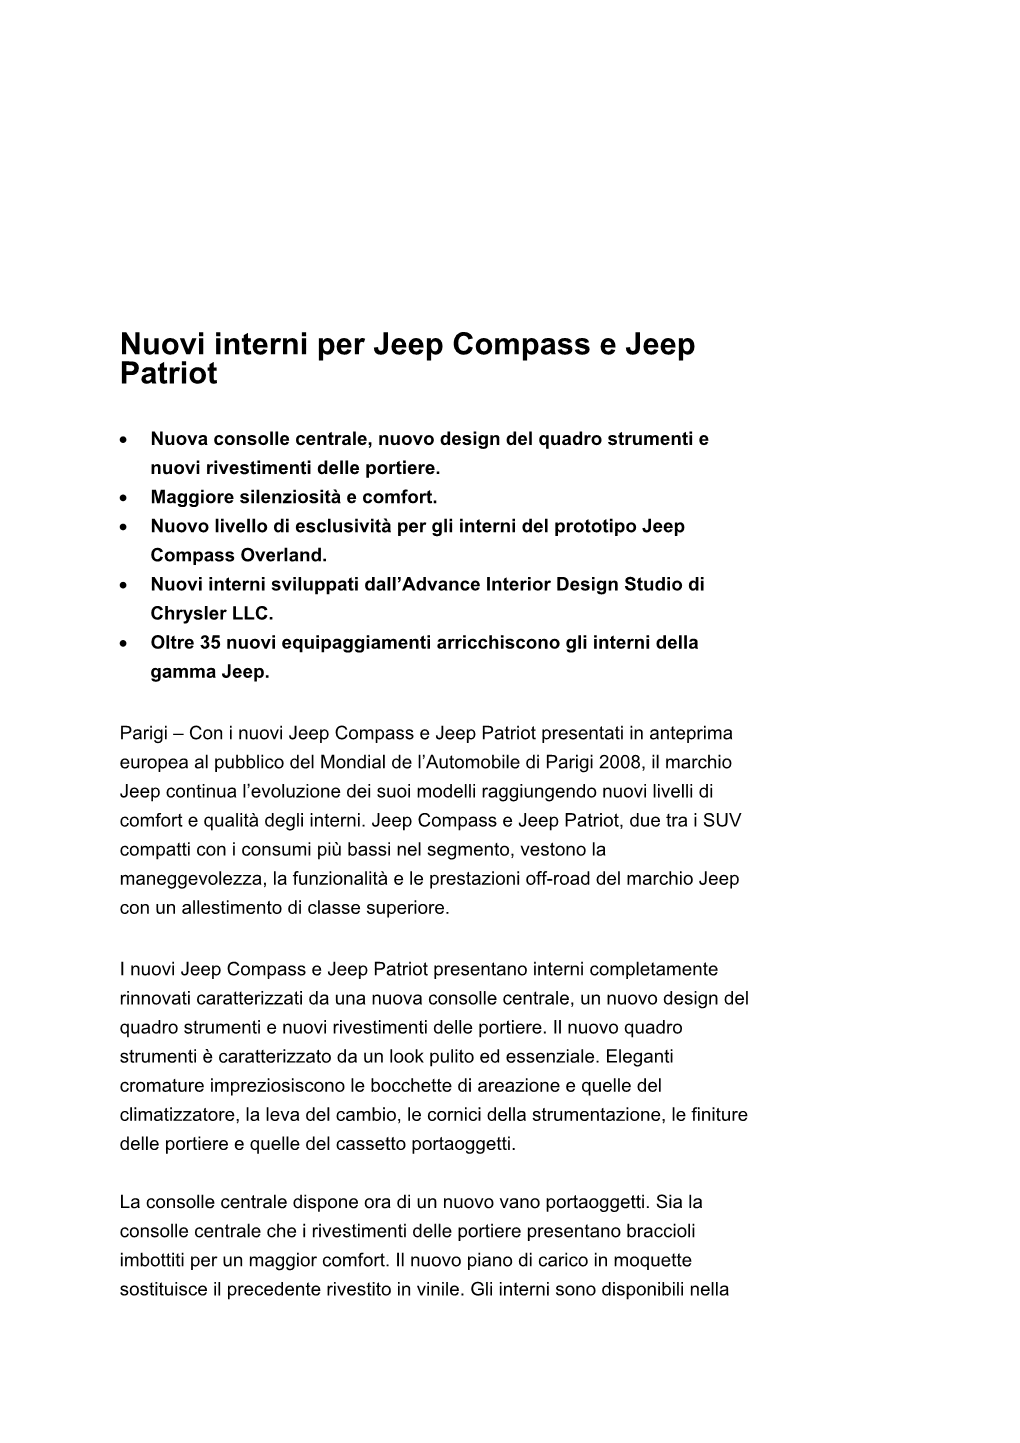 Nuovi Interni Per Jeep Compass E Jeep Patriot